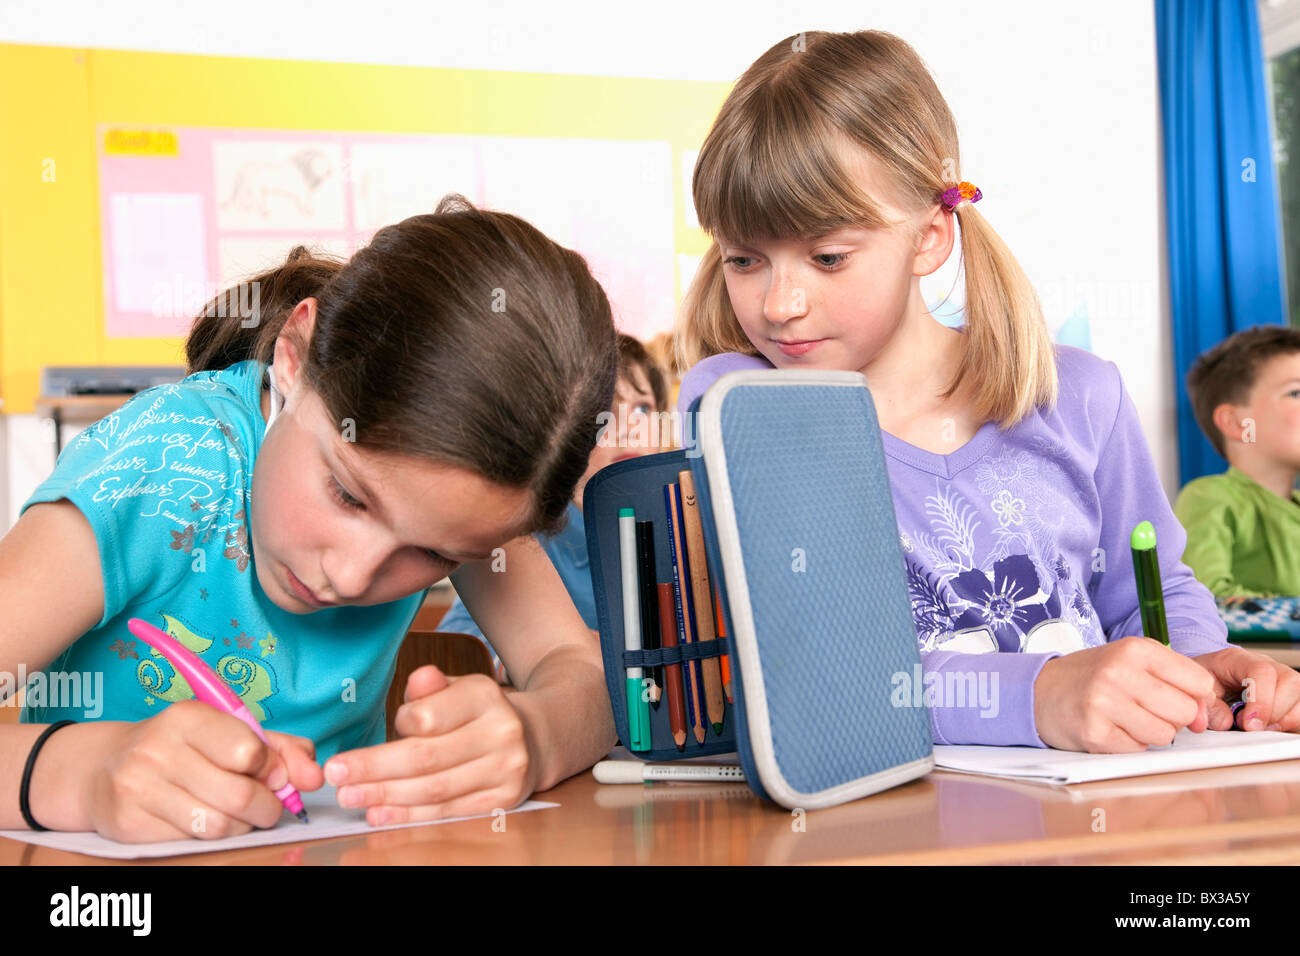 zwei junge Mädchen schreiben testen im Klassenzimmer eine versuchen zu betrügen Stockfoto